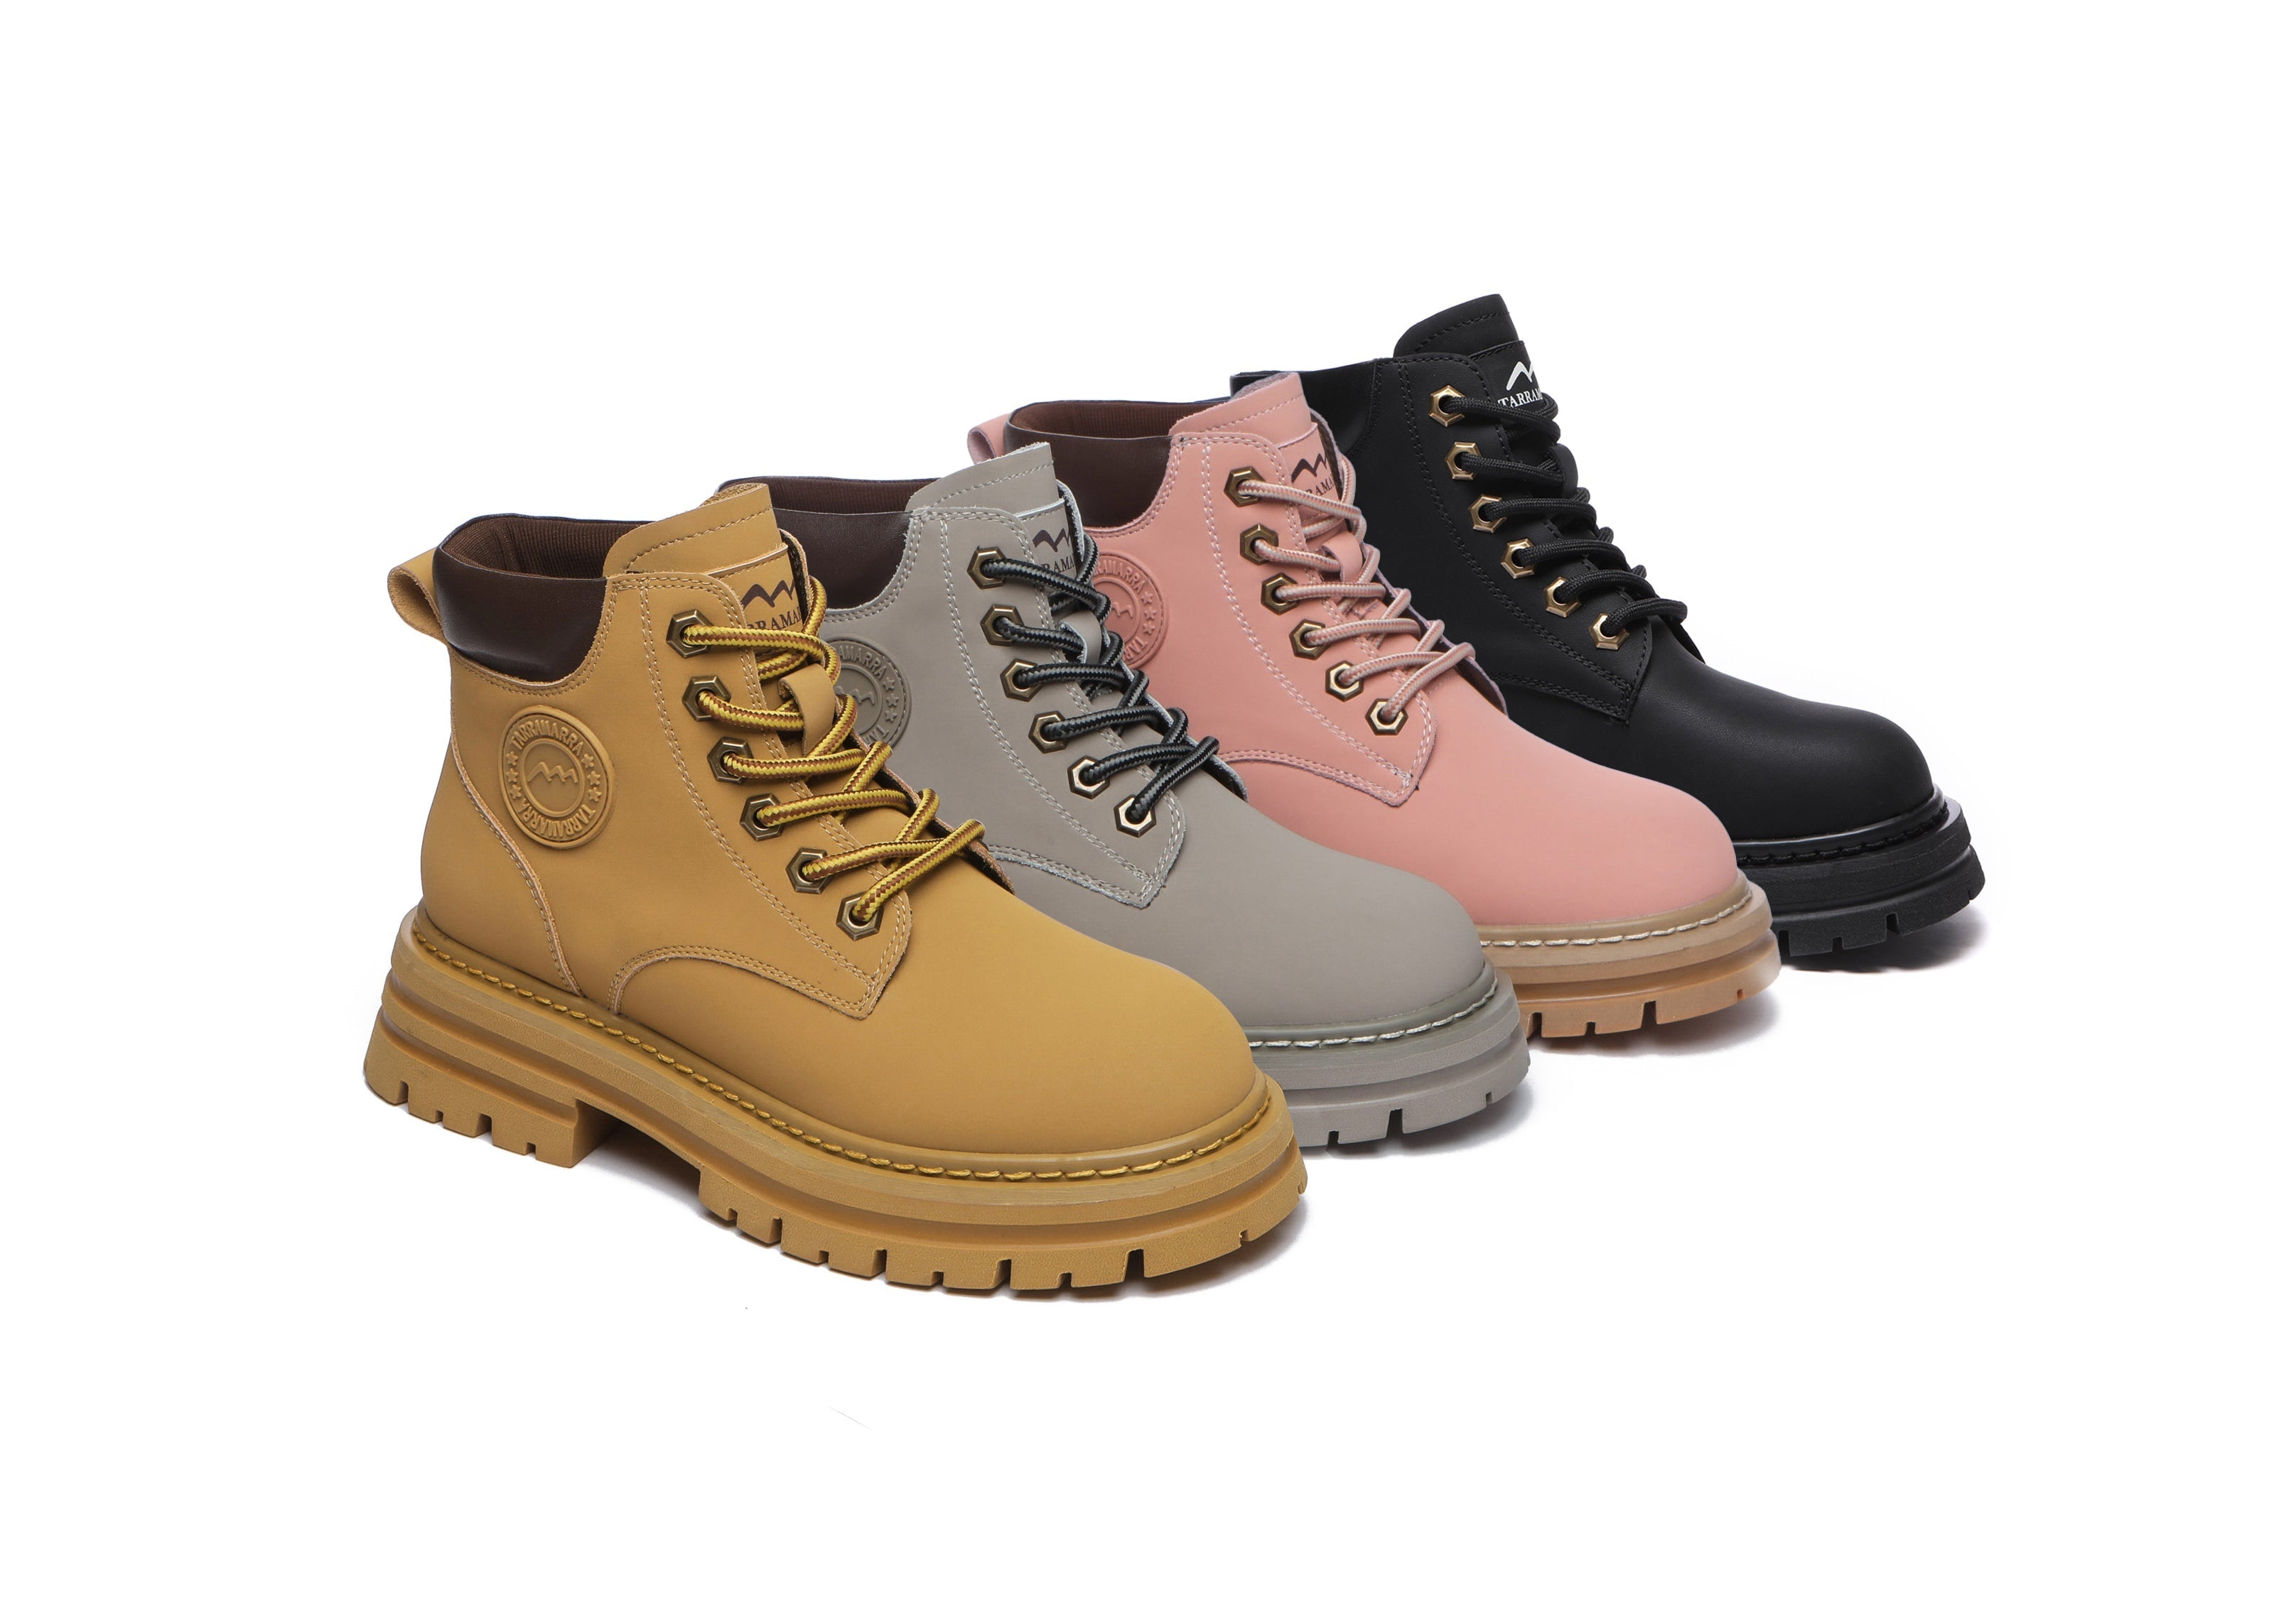 TARRAMARRA® Ugg Lace-Up Leather Boots Aubrey - Boots - Chestnut - AU Ladies 4 / AU Men 2 / EU 35 - Uggoutlet